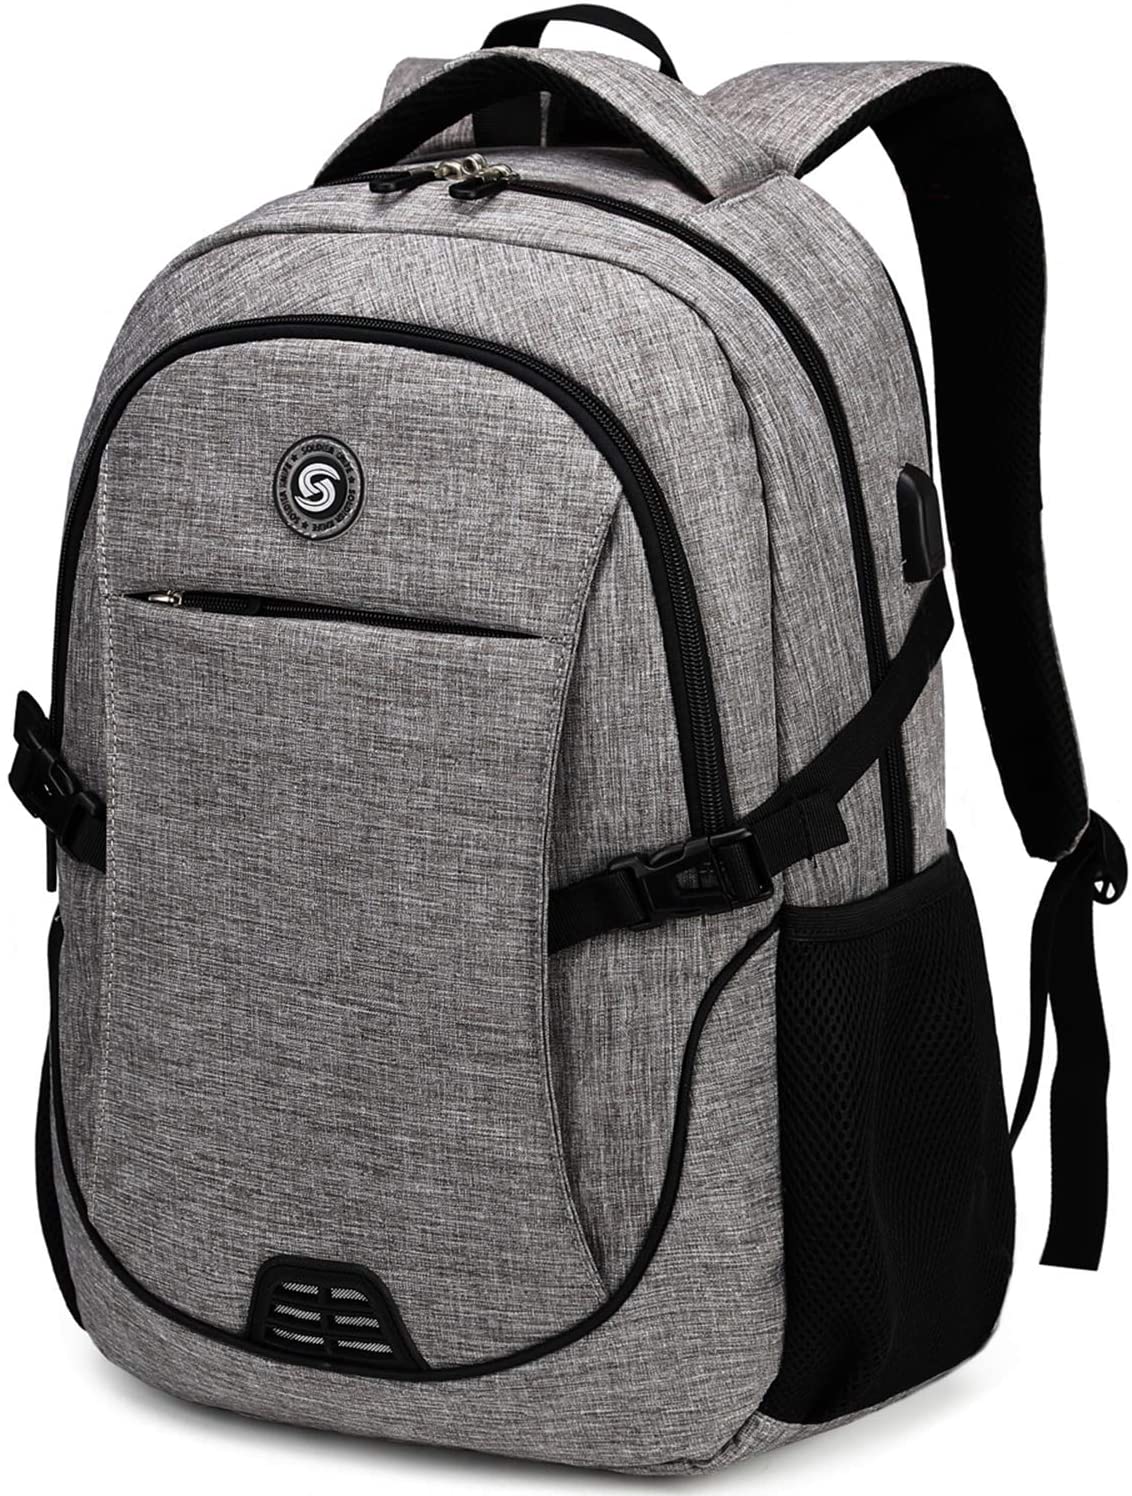 Best BackPacks For Elderly | SHRRADOO Anti Theft Laptop Backpack